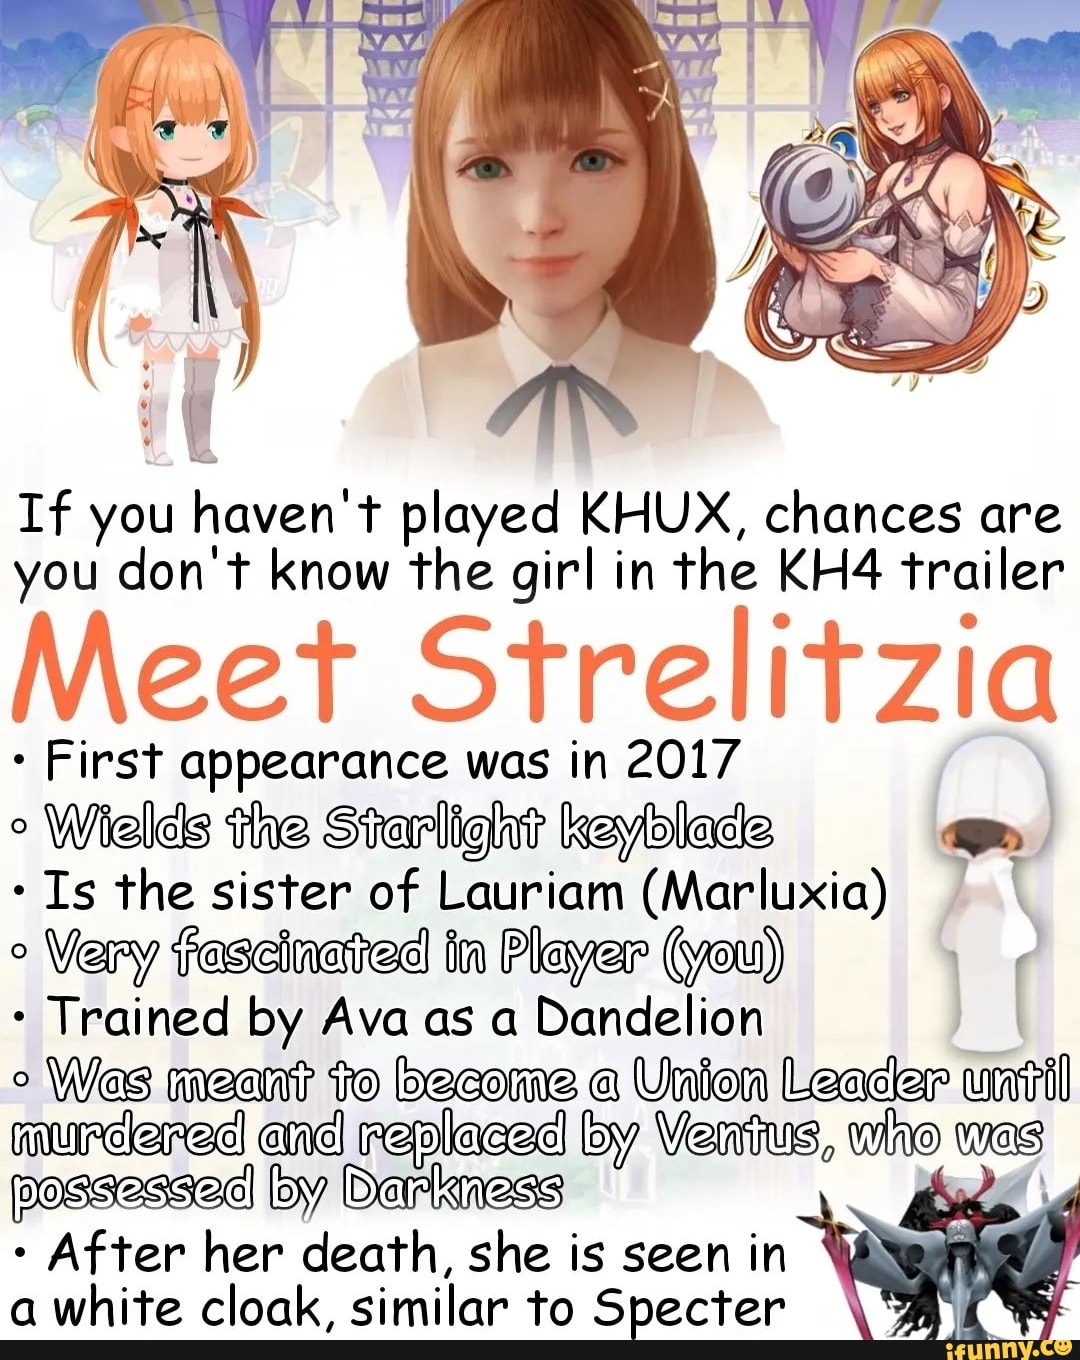 Who is Strelitzia in Kingdom Hearts 4?